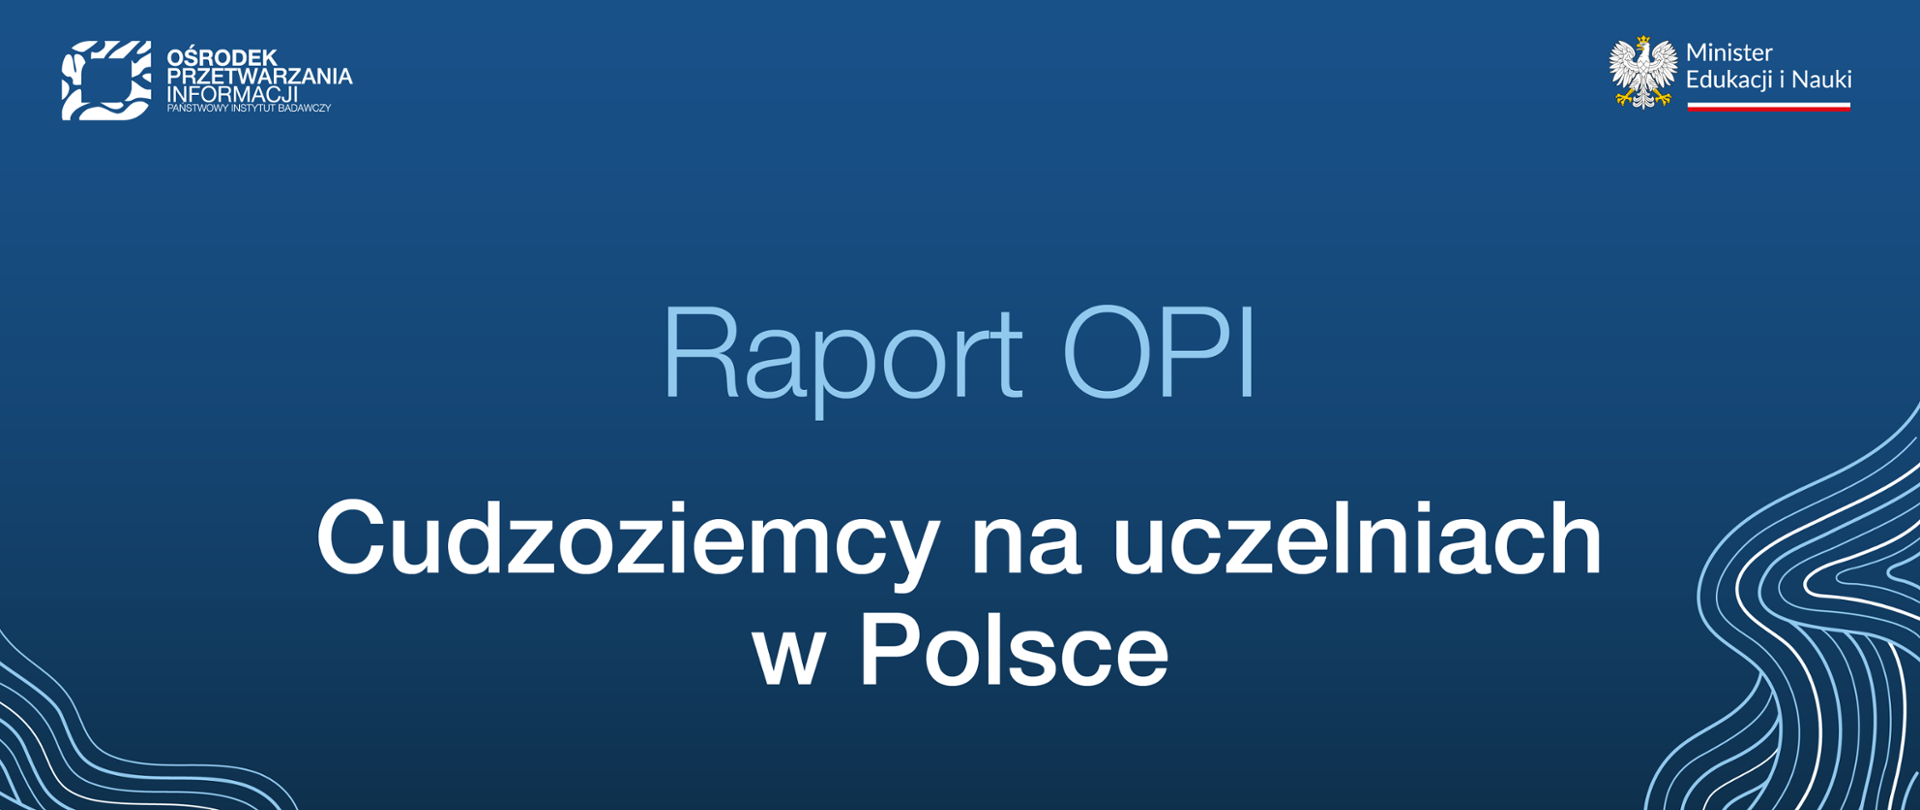 Grafika: na niebieskim tle napis: Raport OPI. Cudzoziemcy na uczelniach w Polsce